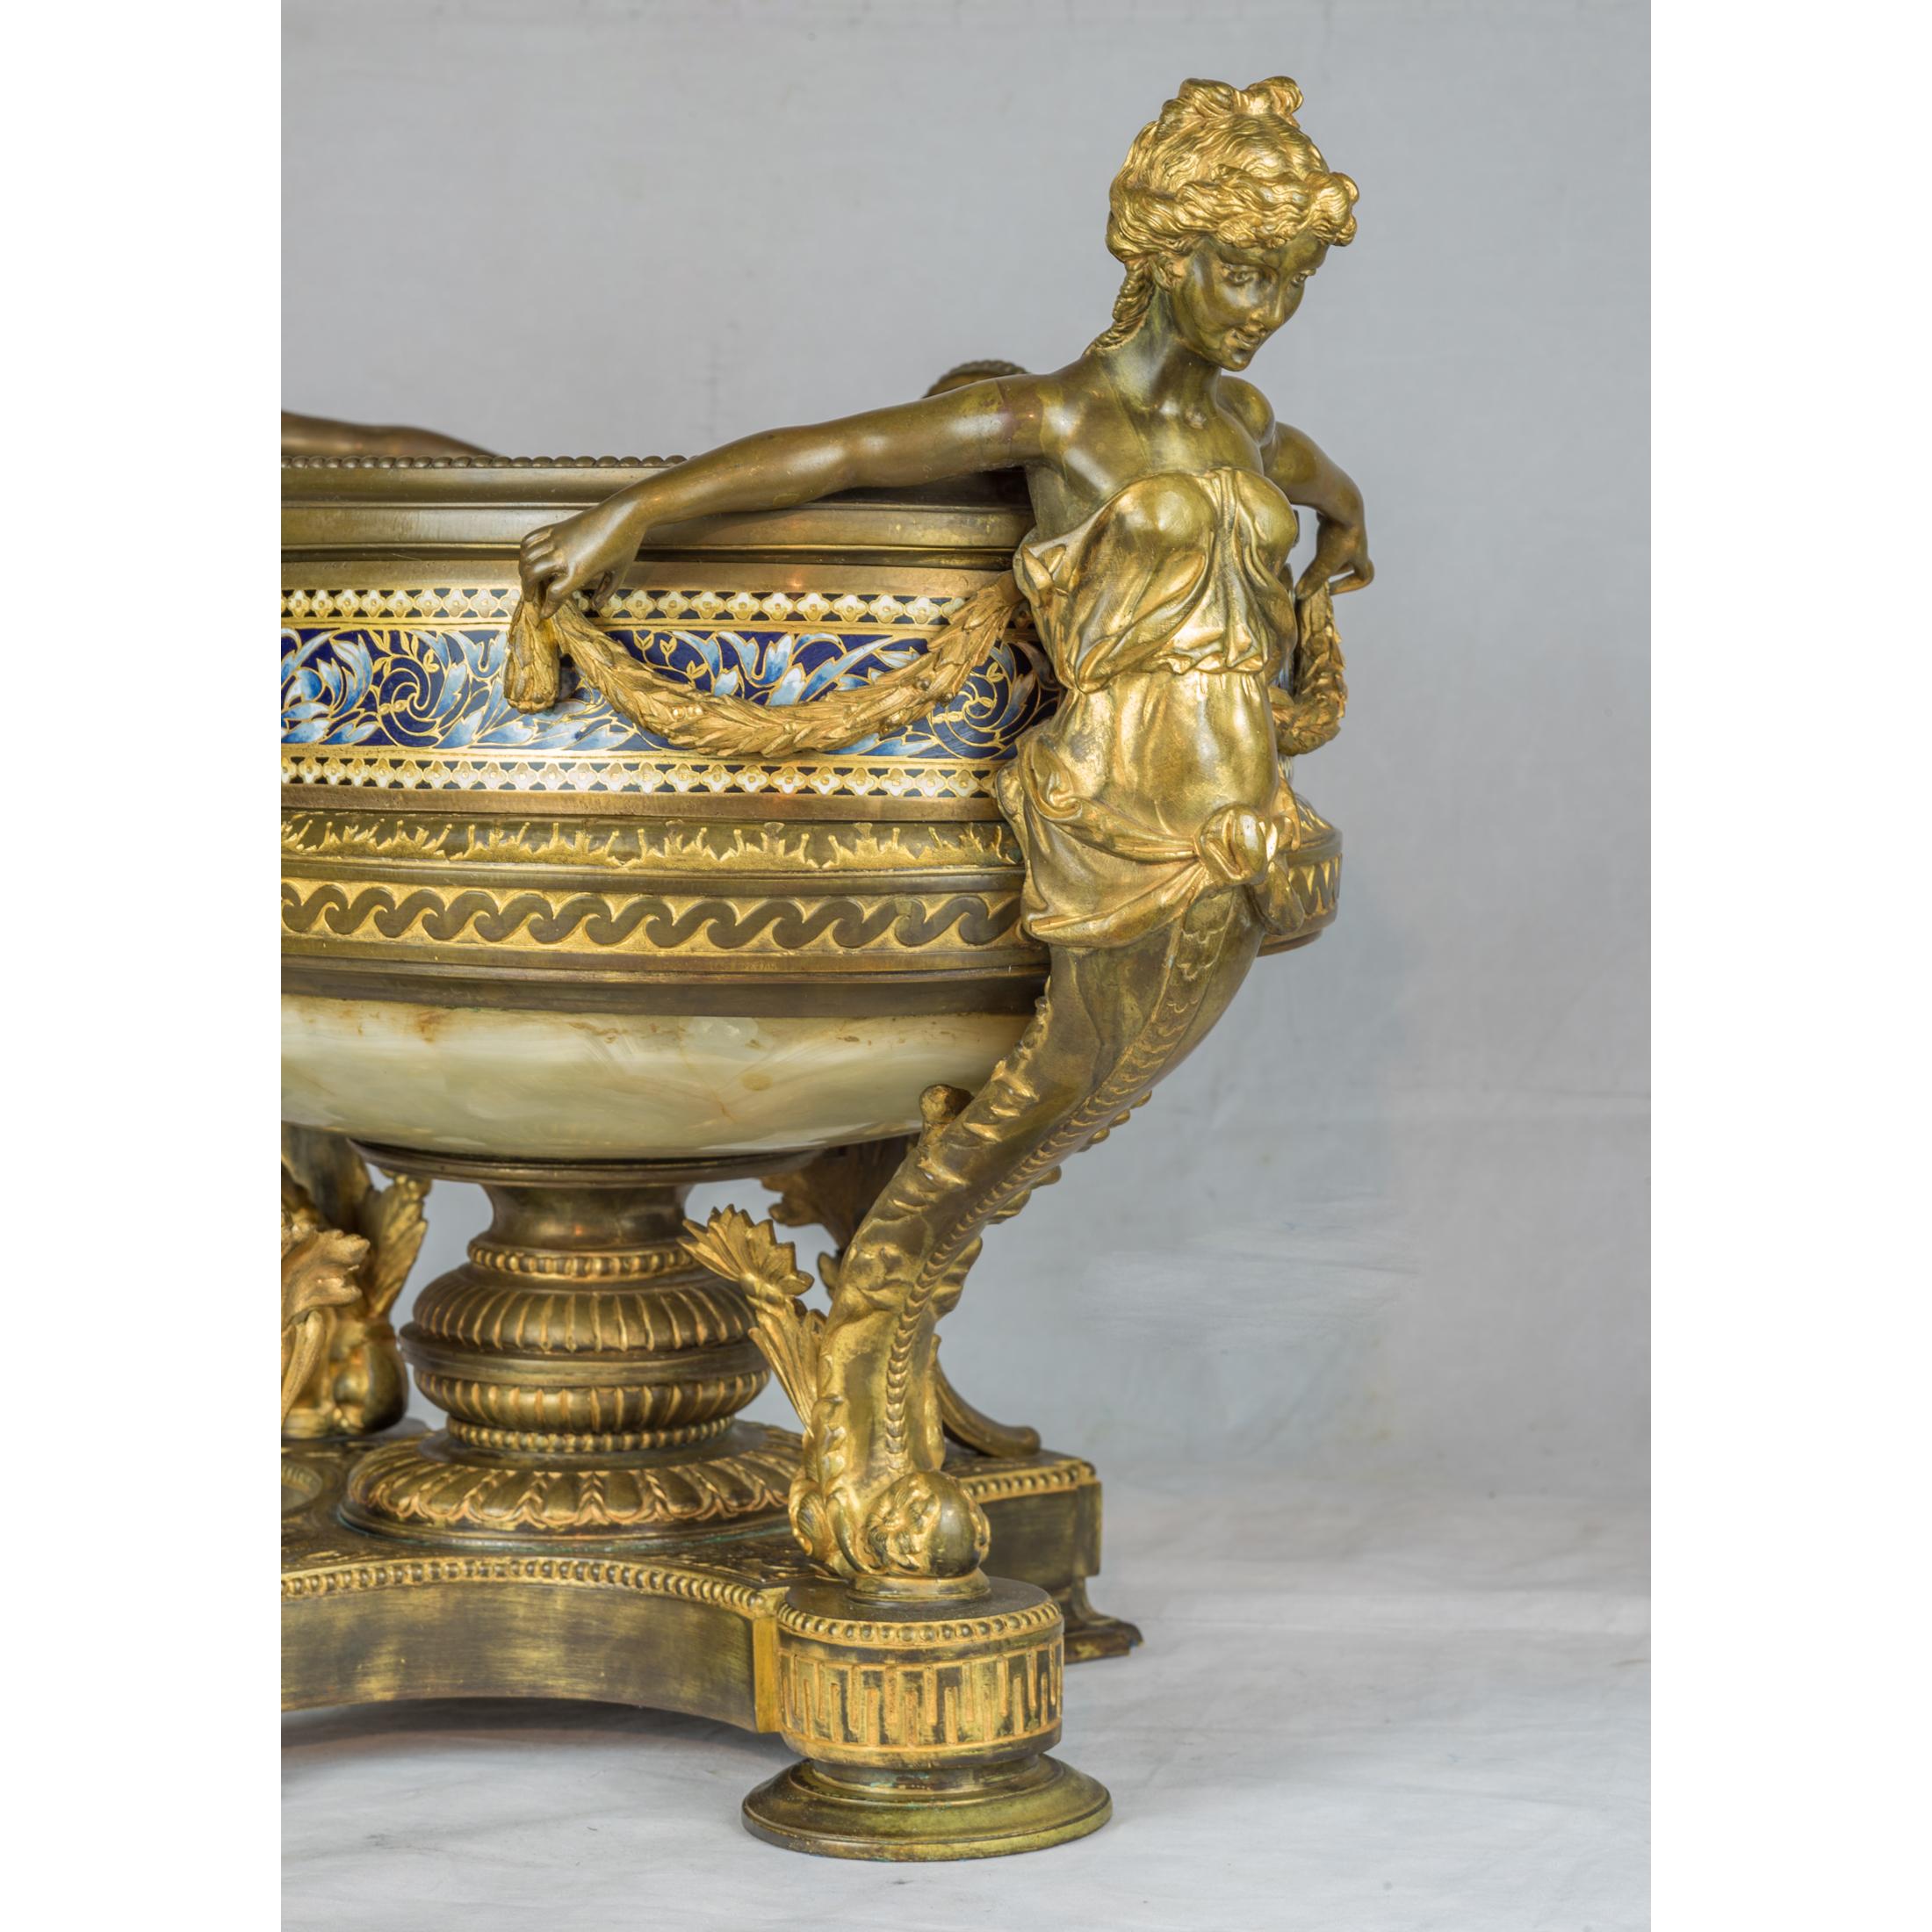 19th Century A Renaissance Revival Onyx and Champlevé Planter with Cloisonné Enamel Urns For Sale